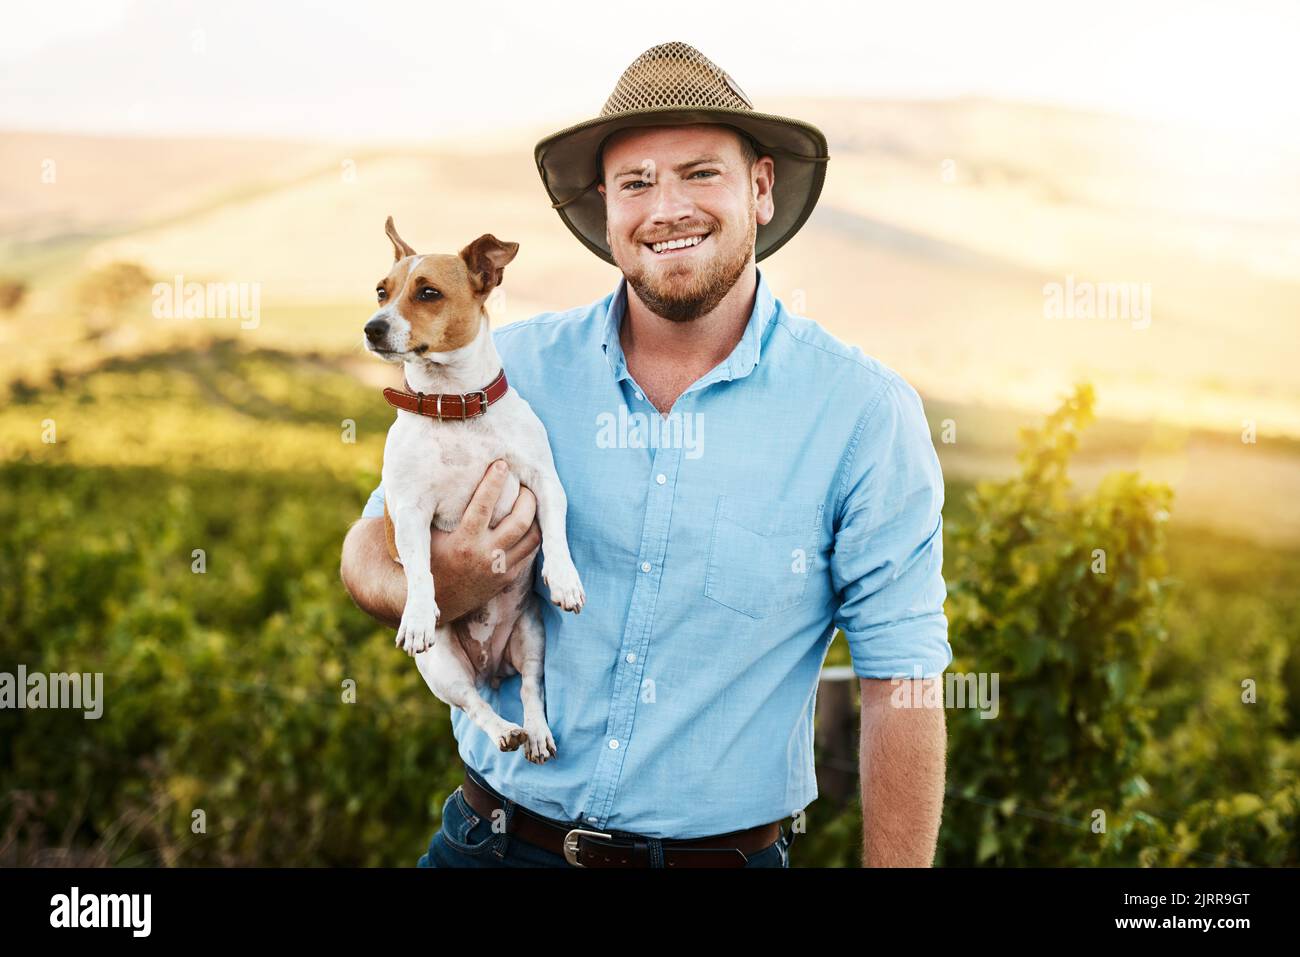 Wir beide arbeiten gerne zusammen auf dem Bauernhof. Porträt eines Bauern, der seinen Hund in einem Weinberg hält. Stockfoto